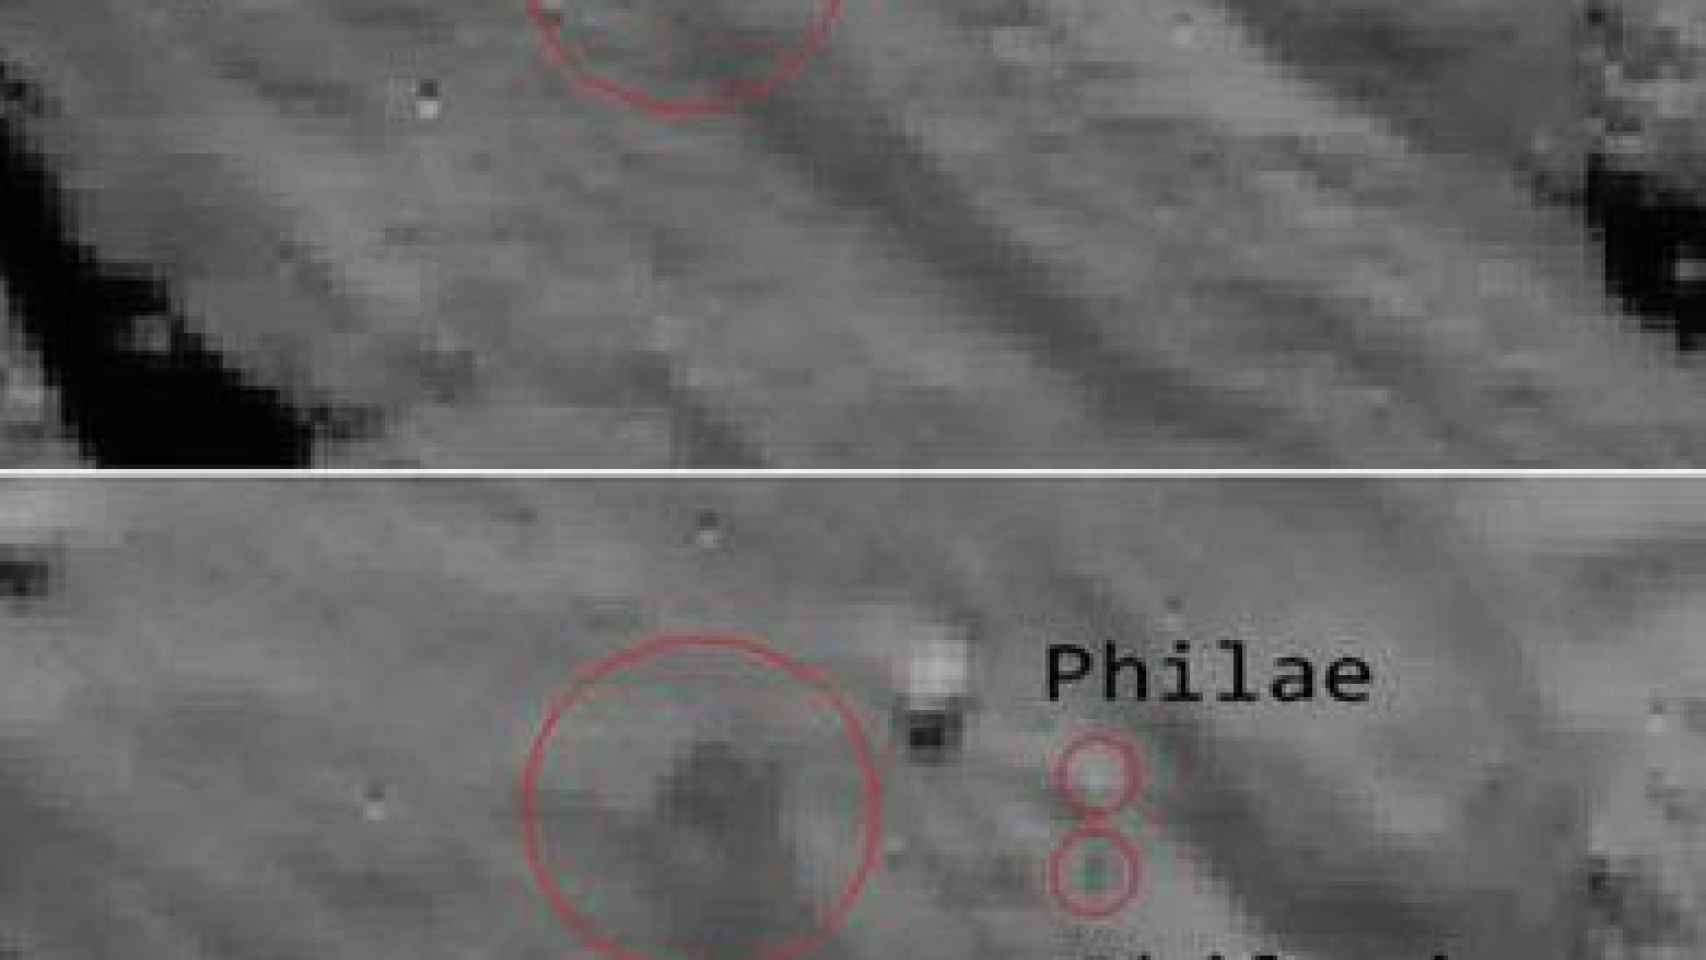 Entre estas dos instantáneas captadas por Rosetta se observa como aparece una mancha oscura, que los científicos relacionan con la nube de polvo que originó el primer aterrizaje del robot Philae, que también aparece con su sombra sobre el cometa.